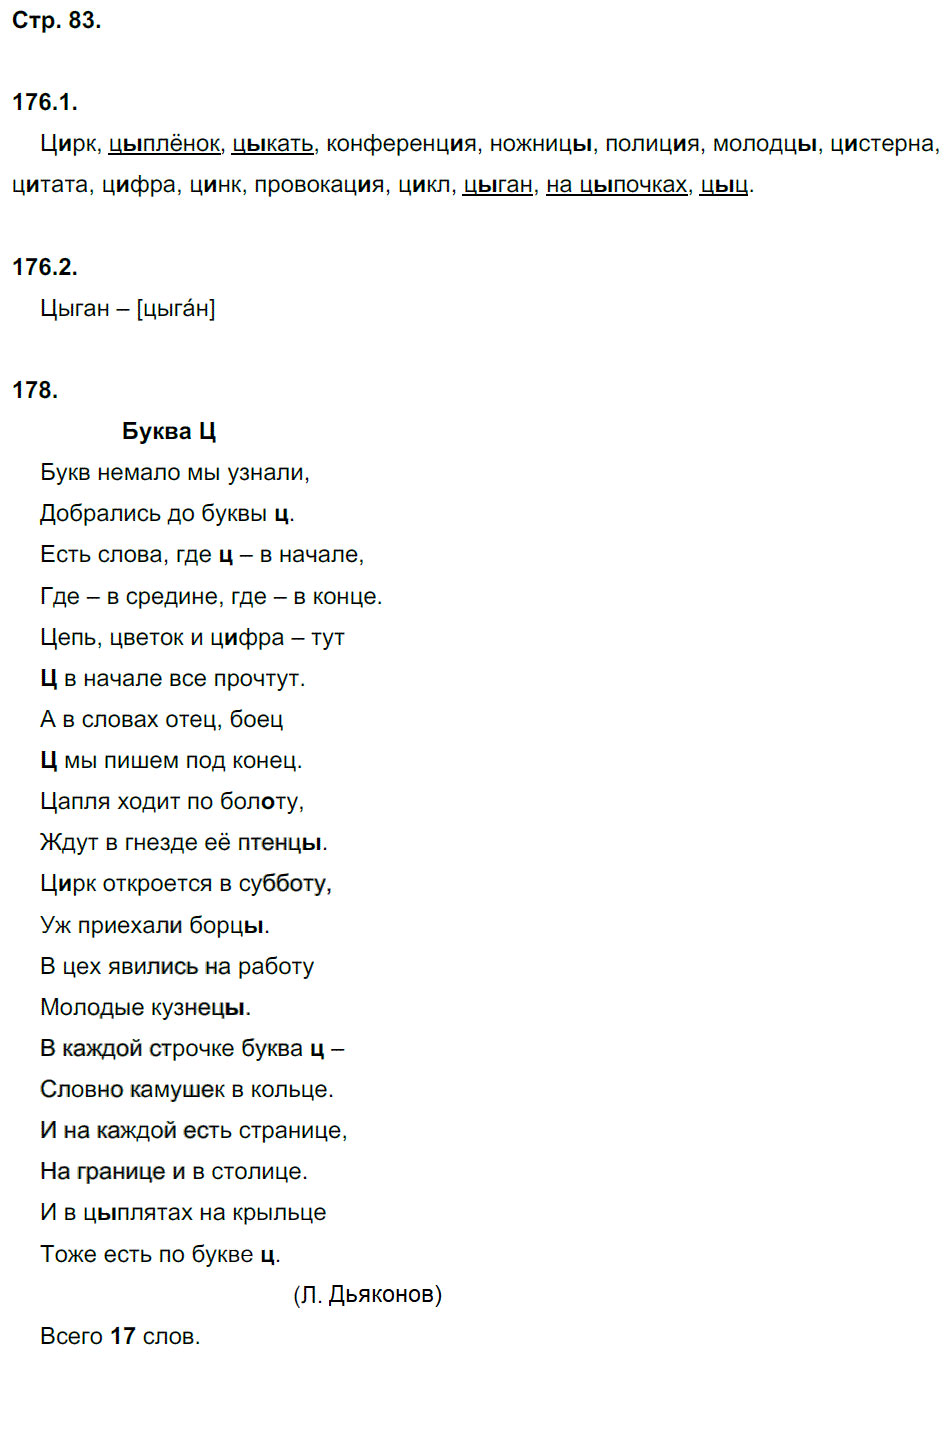 гдз 5 класс рабочая тетрадь часть 1 страница 83 русский язык Львов